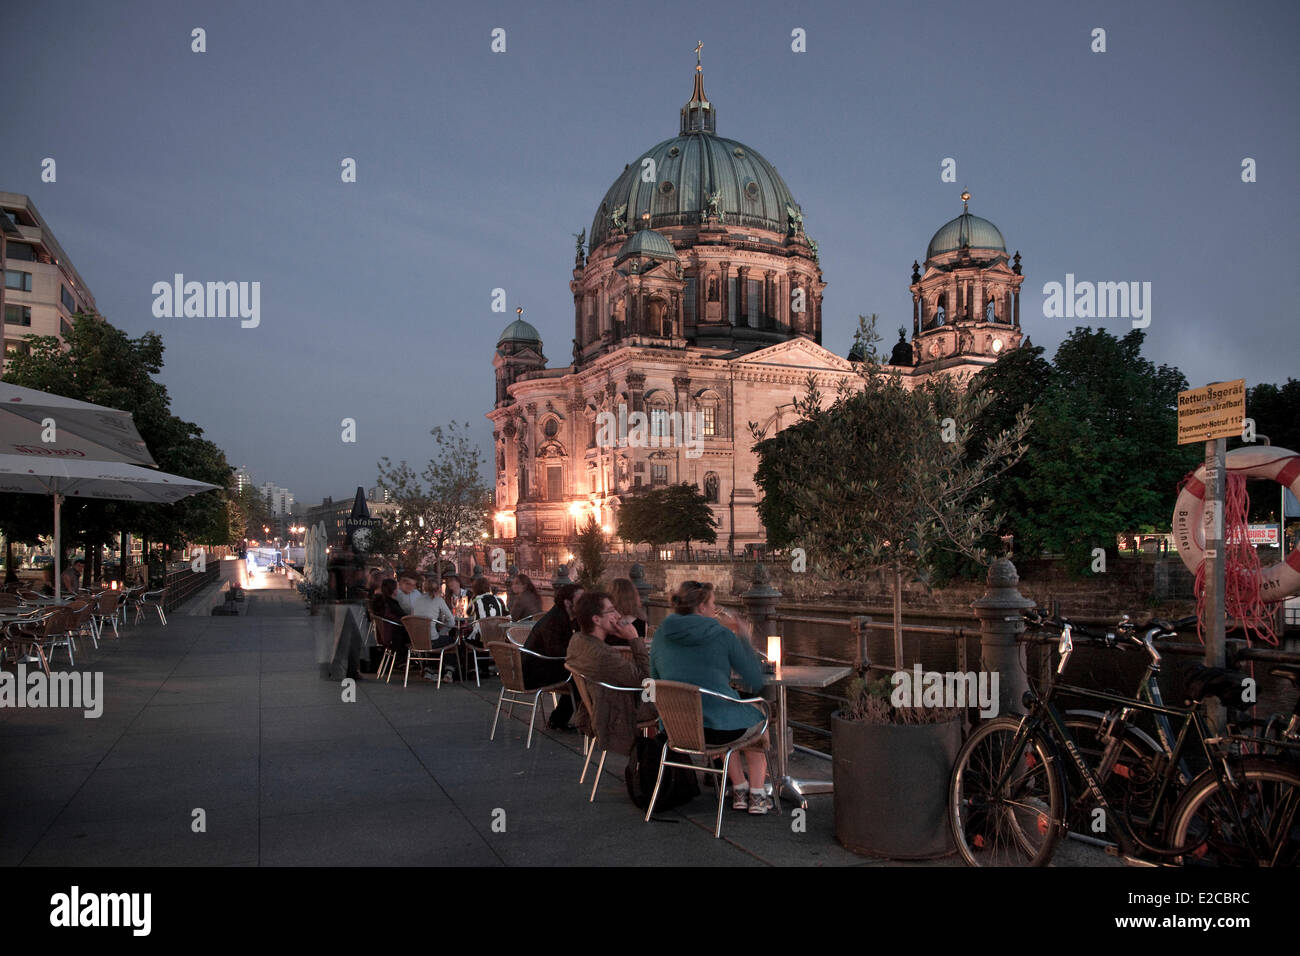 Germania, Berlino, Museumsinsel (Isola dei Musei), classificato come patrimonio mondiale dall UNESCO, Cattedrale di Berlino (Berliner Dom) Foto Stock